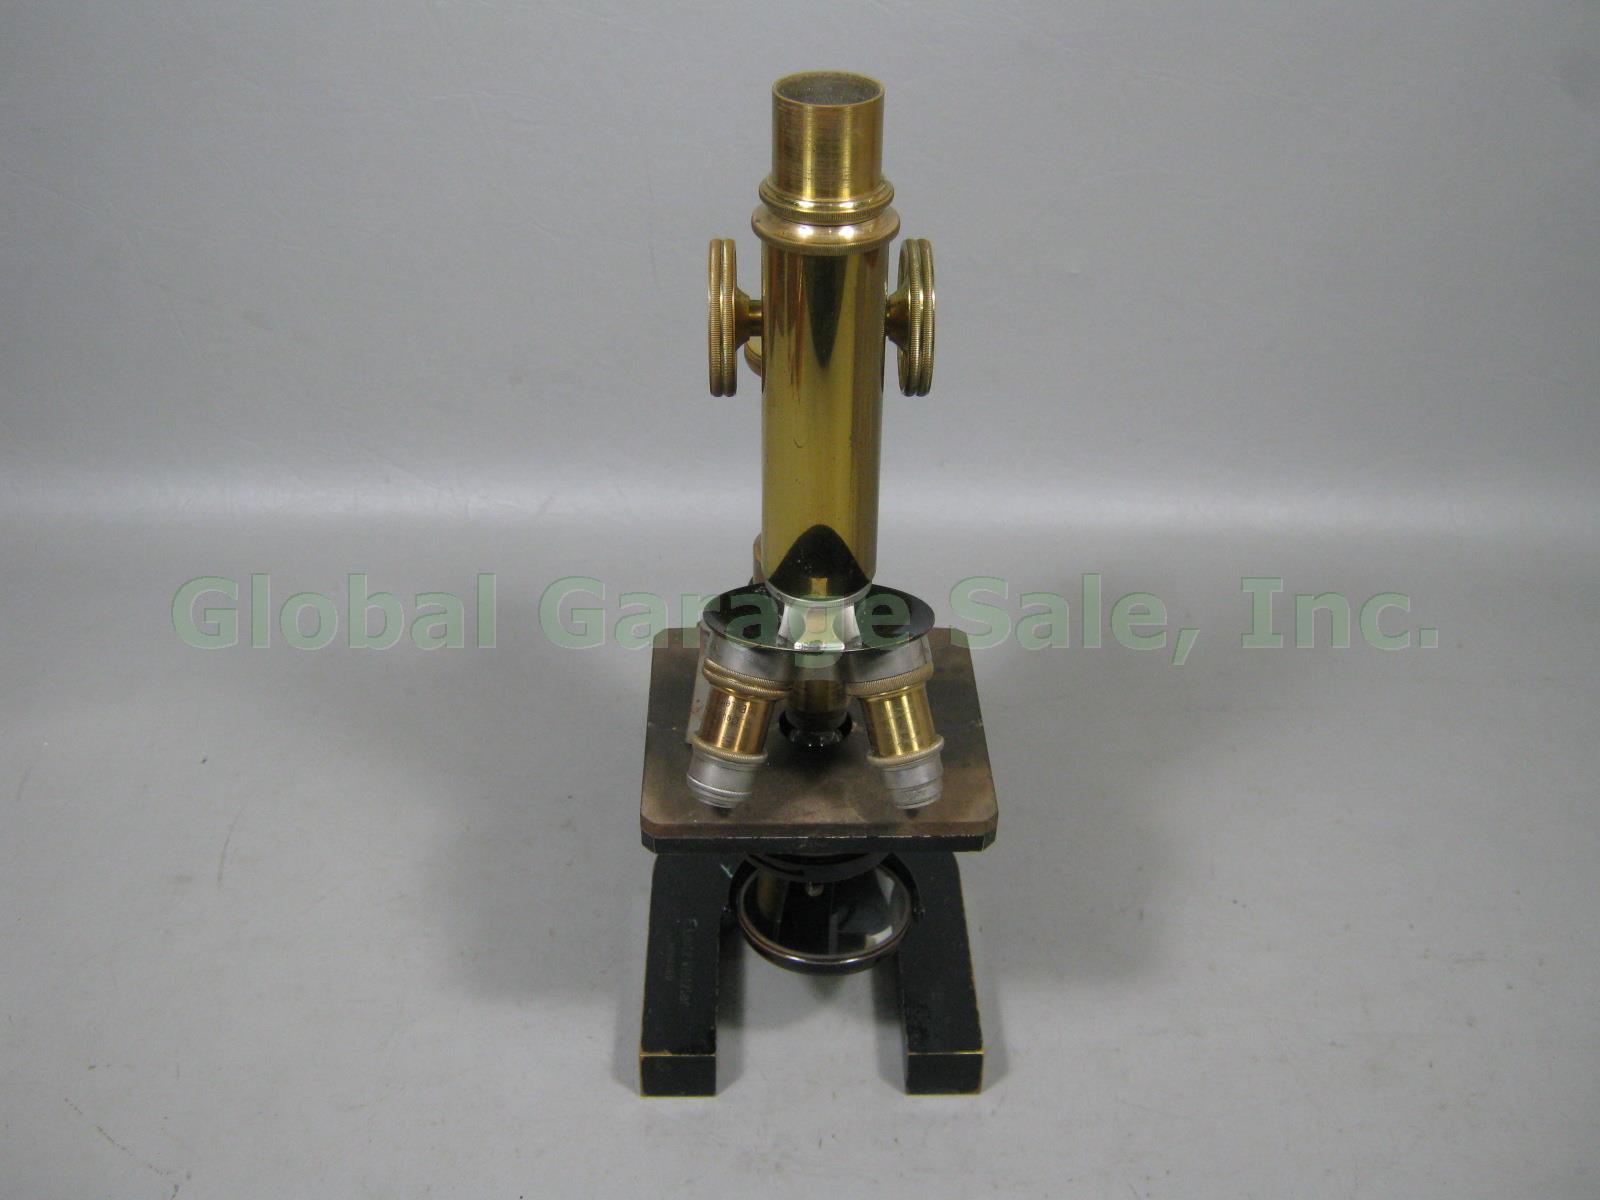 Vtg Antique E Leitz Wetzlar Brass Microscope 94062 Oil Immersion Objective +Case 6